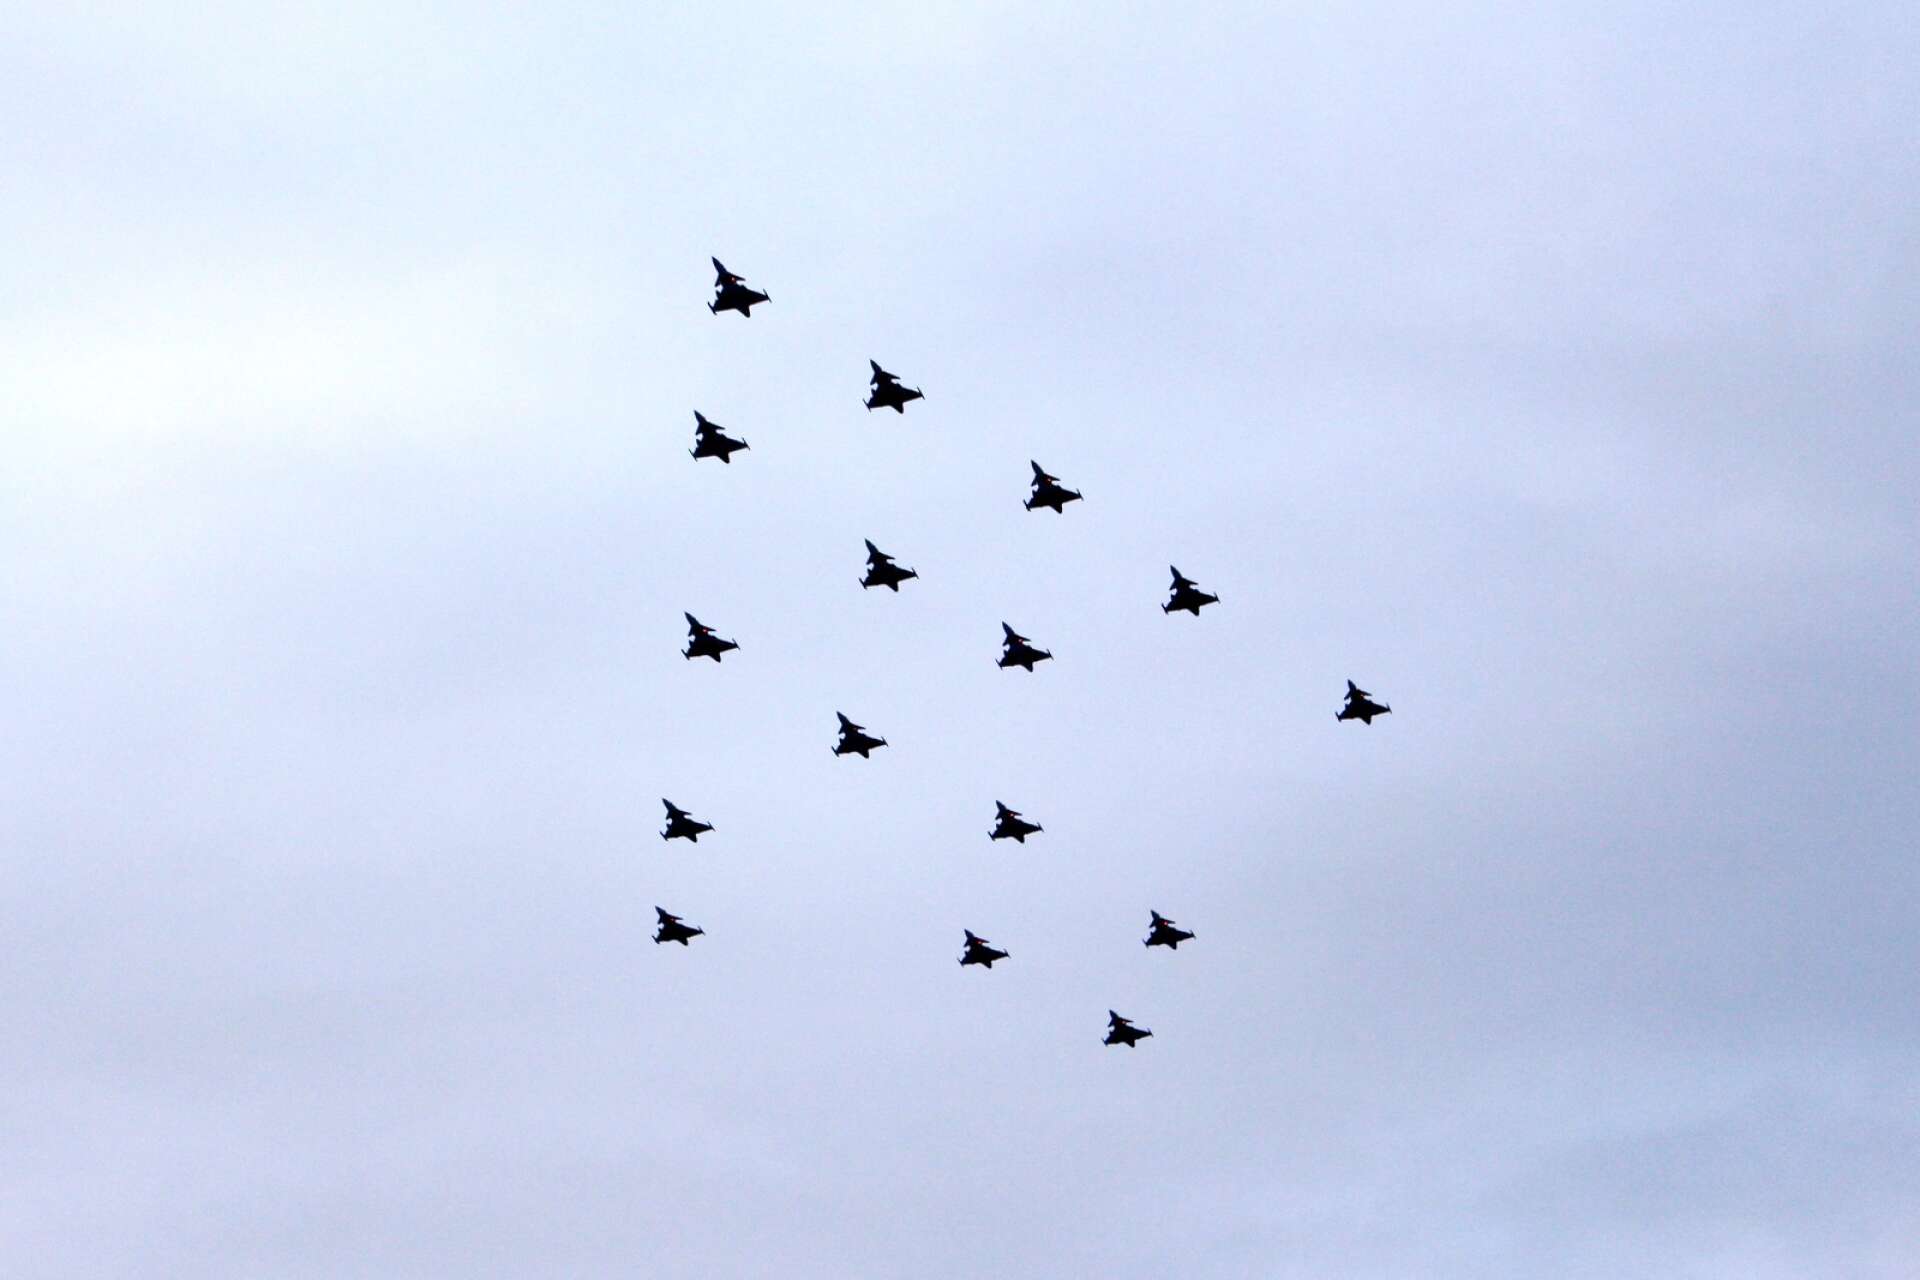 Den 13 december ska man lyfta blicken mot skyn, då sker nämligen formationsflygning med Jas 39 Gripen.